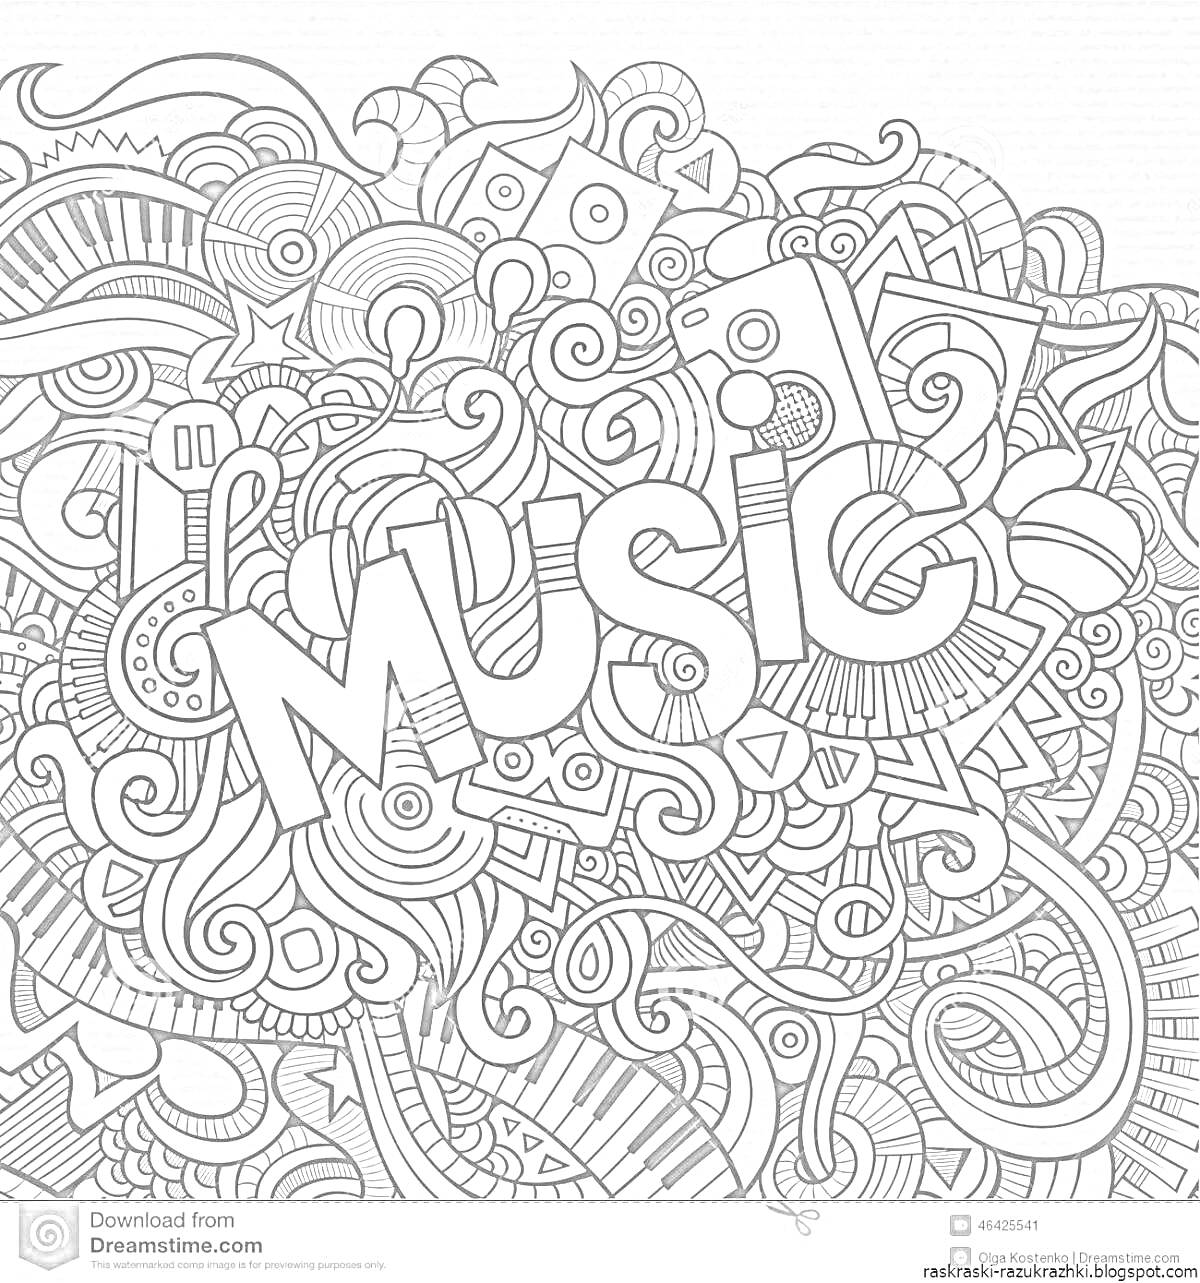 На раскраске изображено: Музыка, Музыкальные инструменты, Ноты, Абстрактные узоры, Творчество, Антистресс